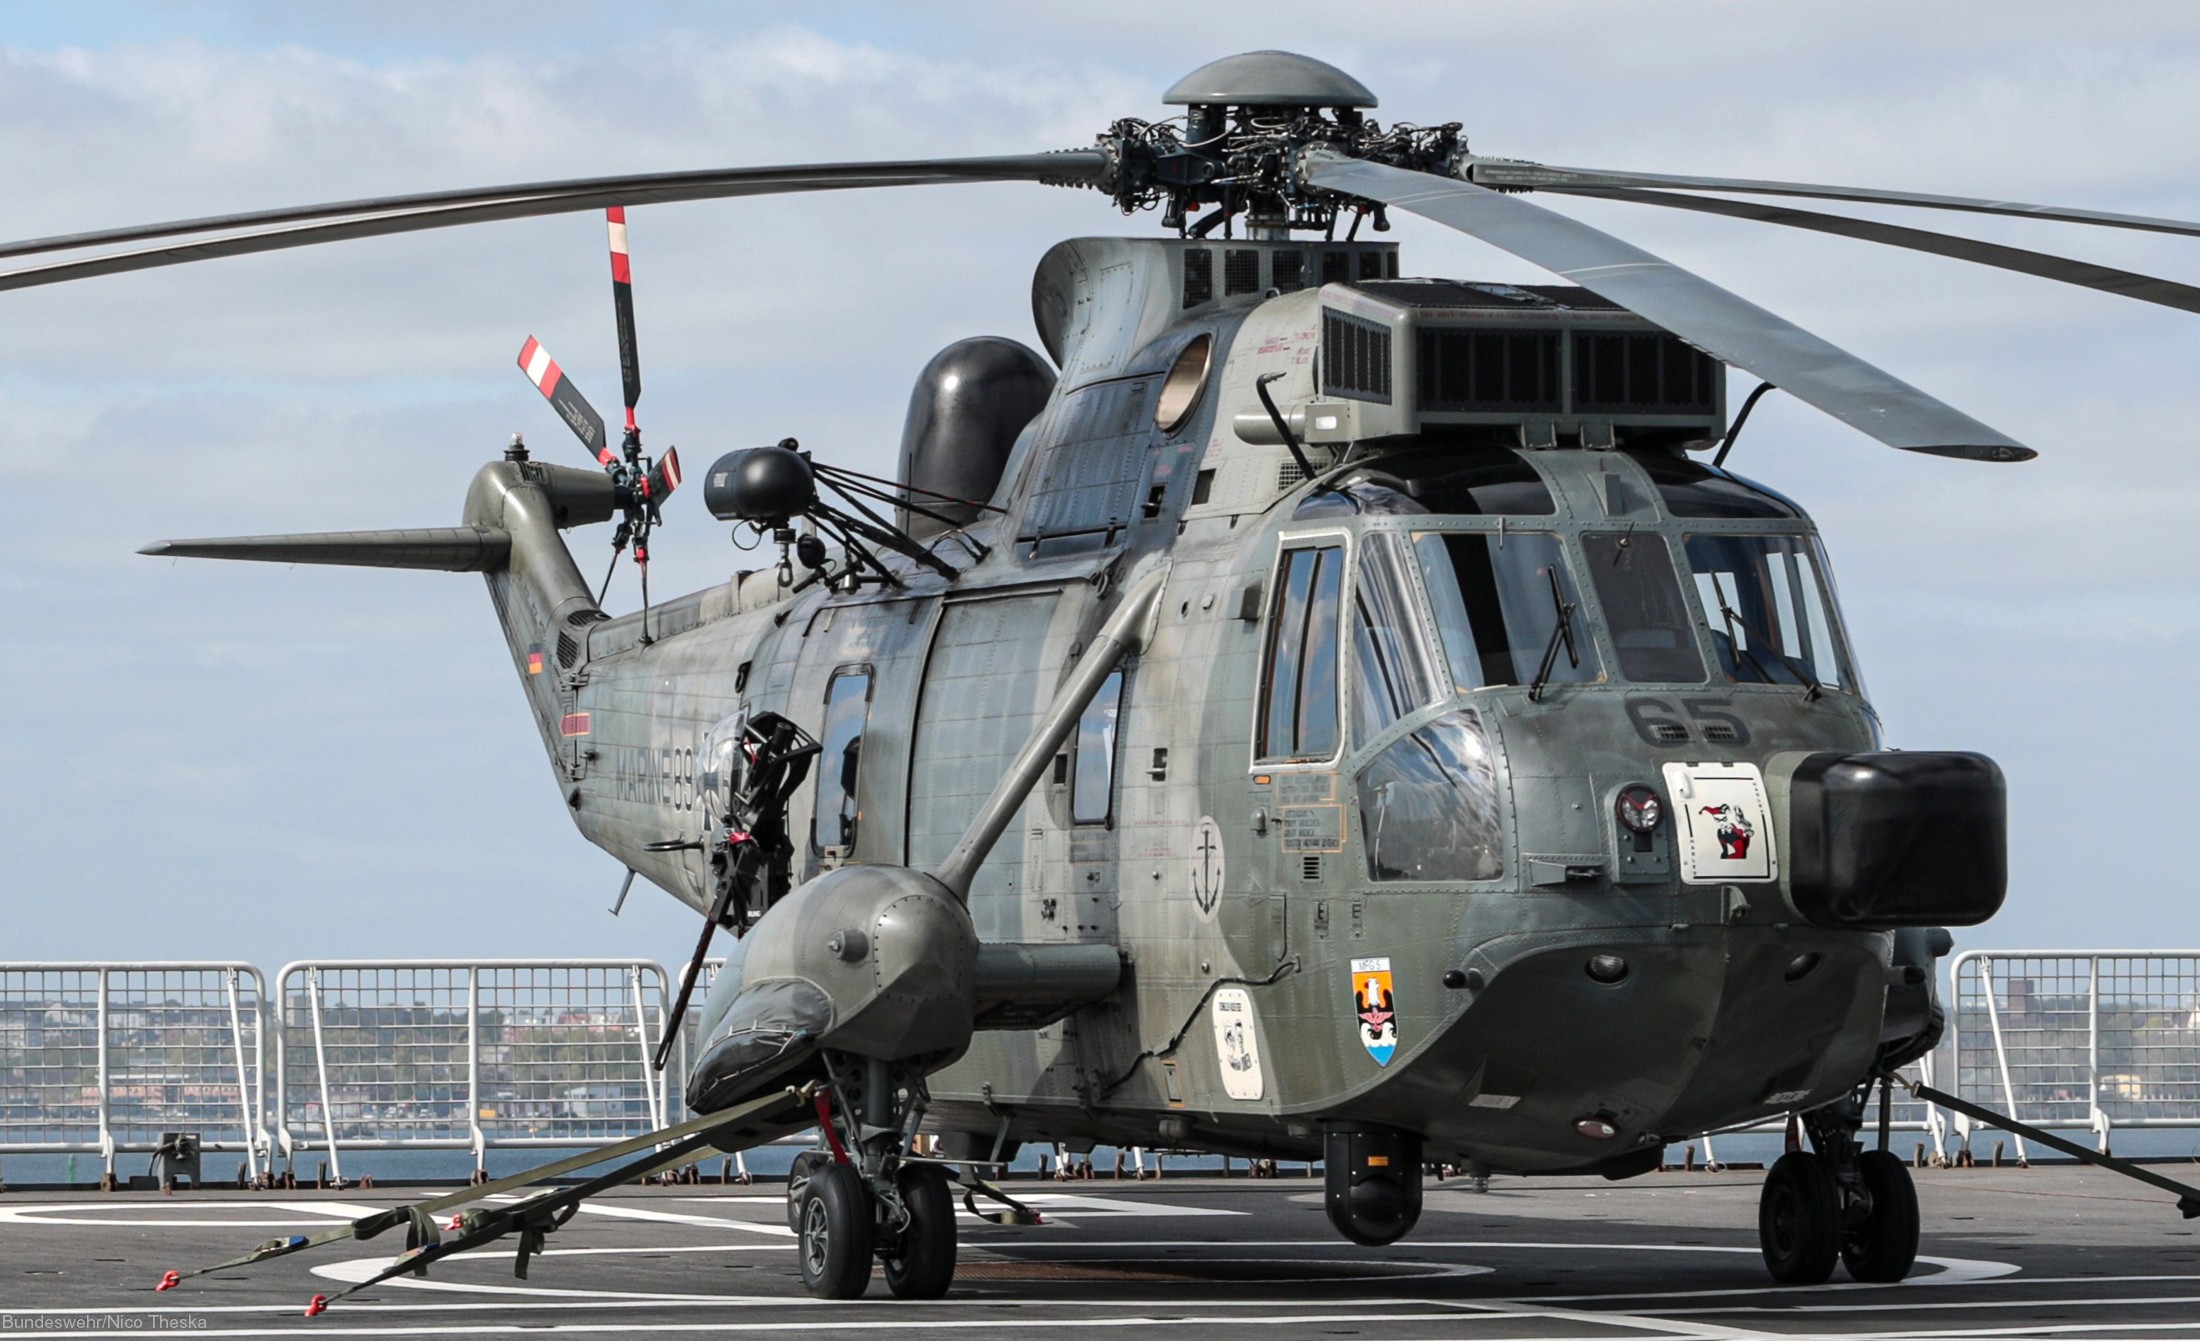 sea king mk.41 westland naval helicopter german navy deutsche marine sar 02